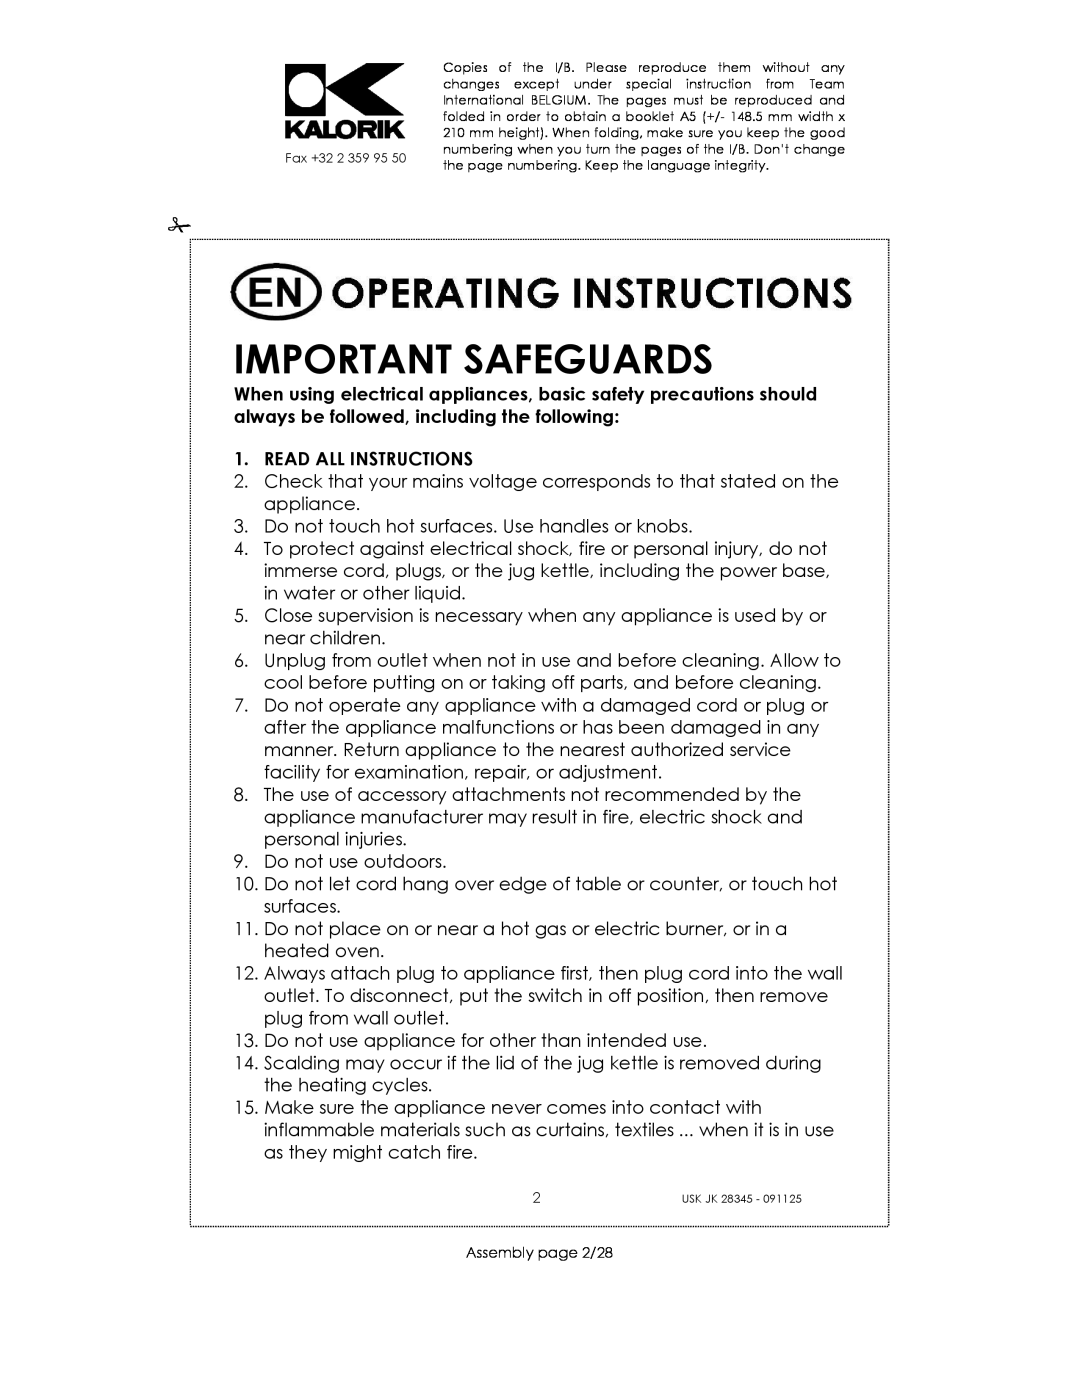 Kalorik USK JK 28345 manual Important Safeguards 